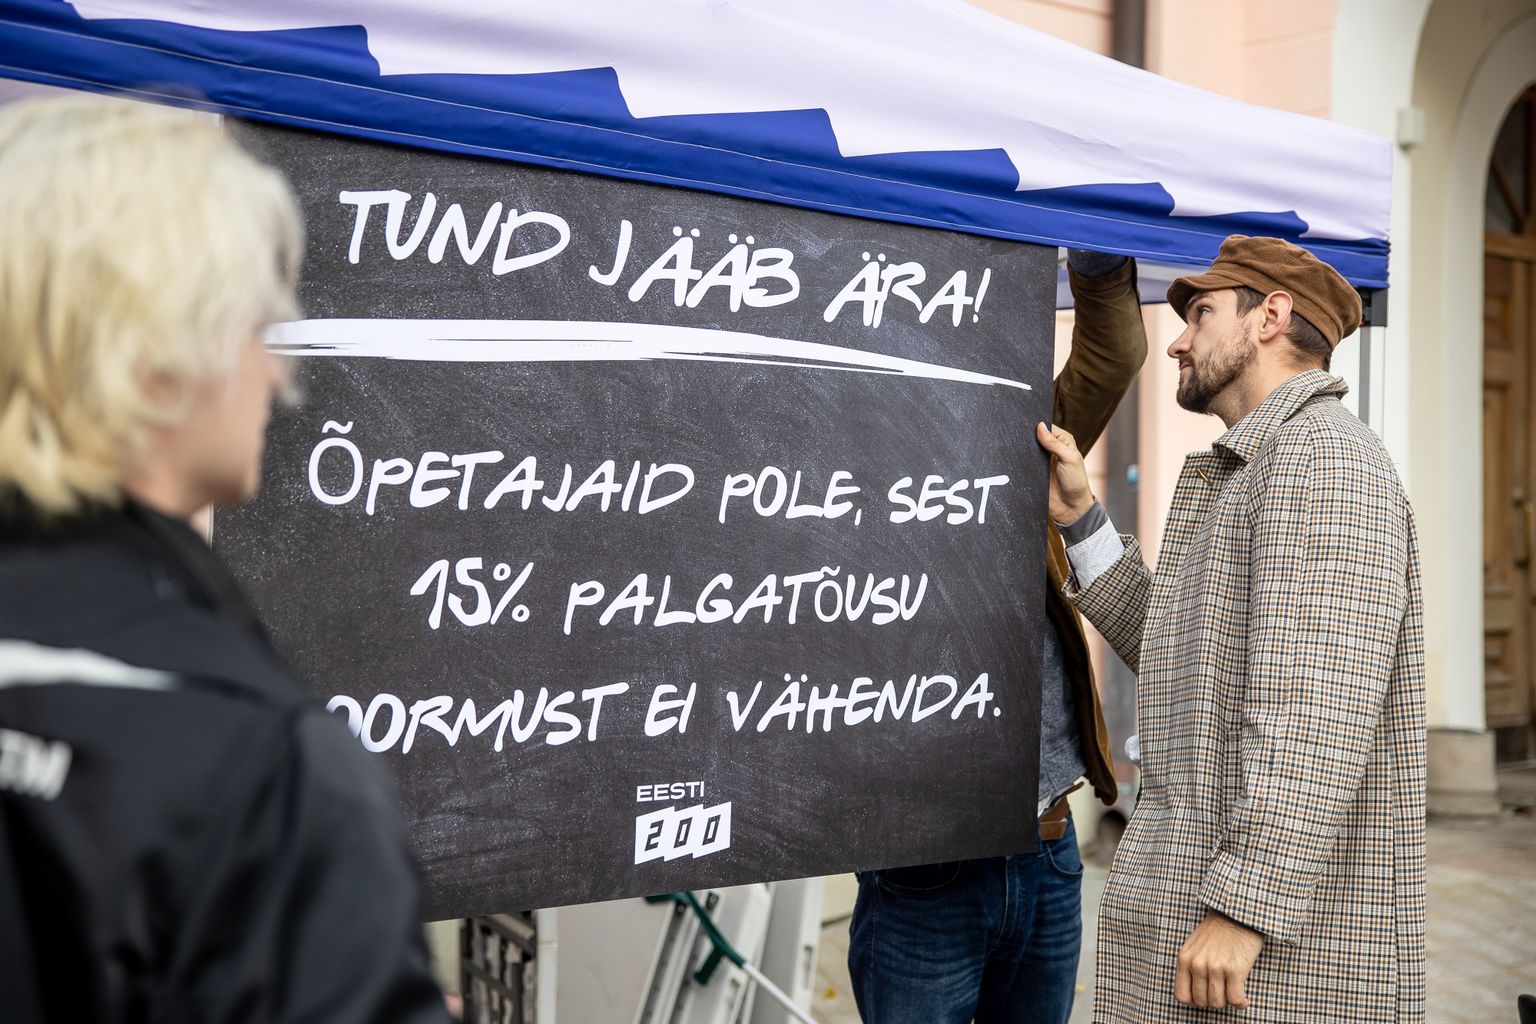 Eesti 200 nõuab Toompeal õpetajatele veel kõrgemat palka